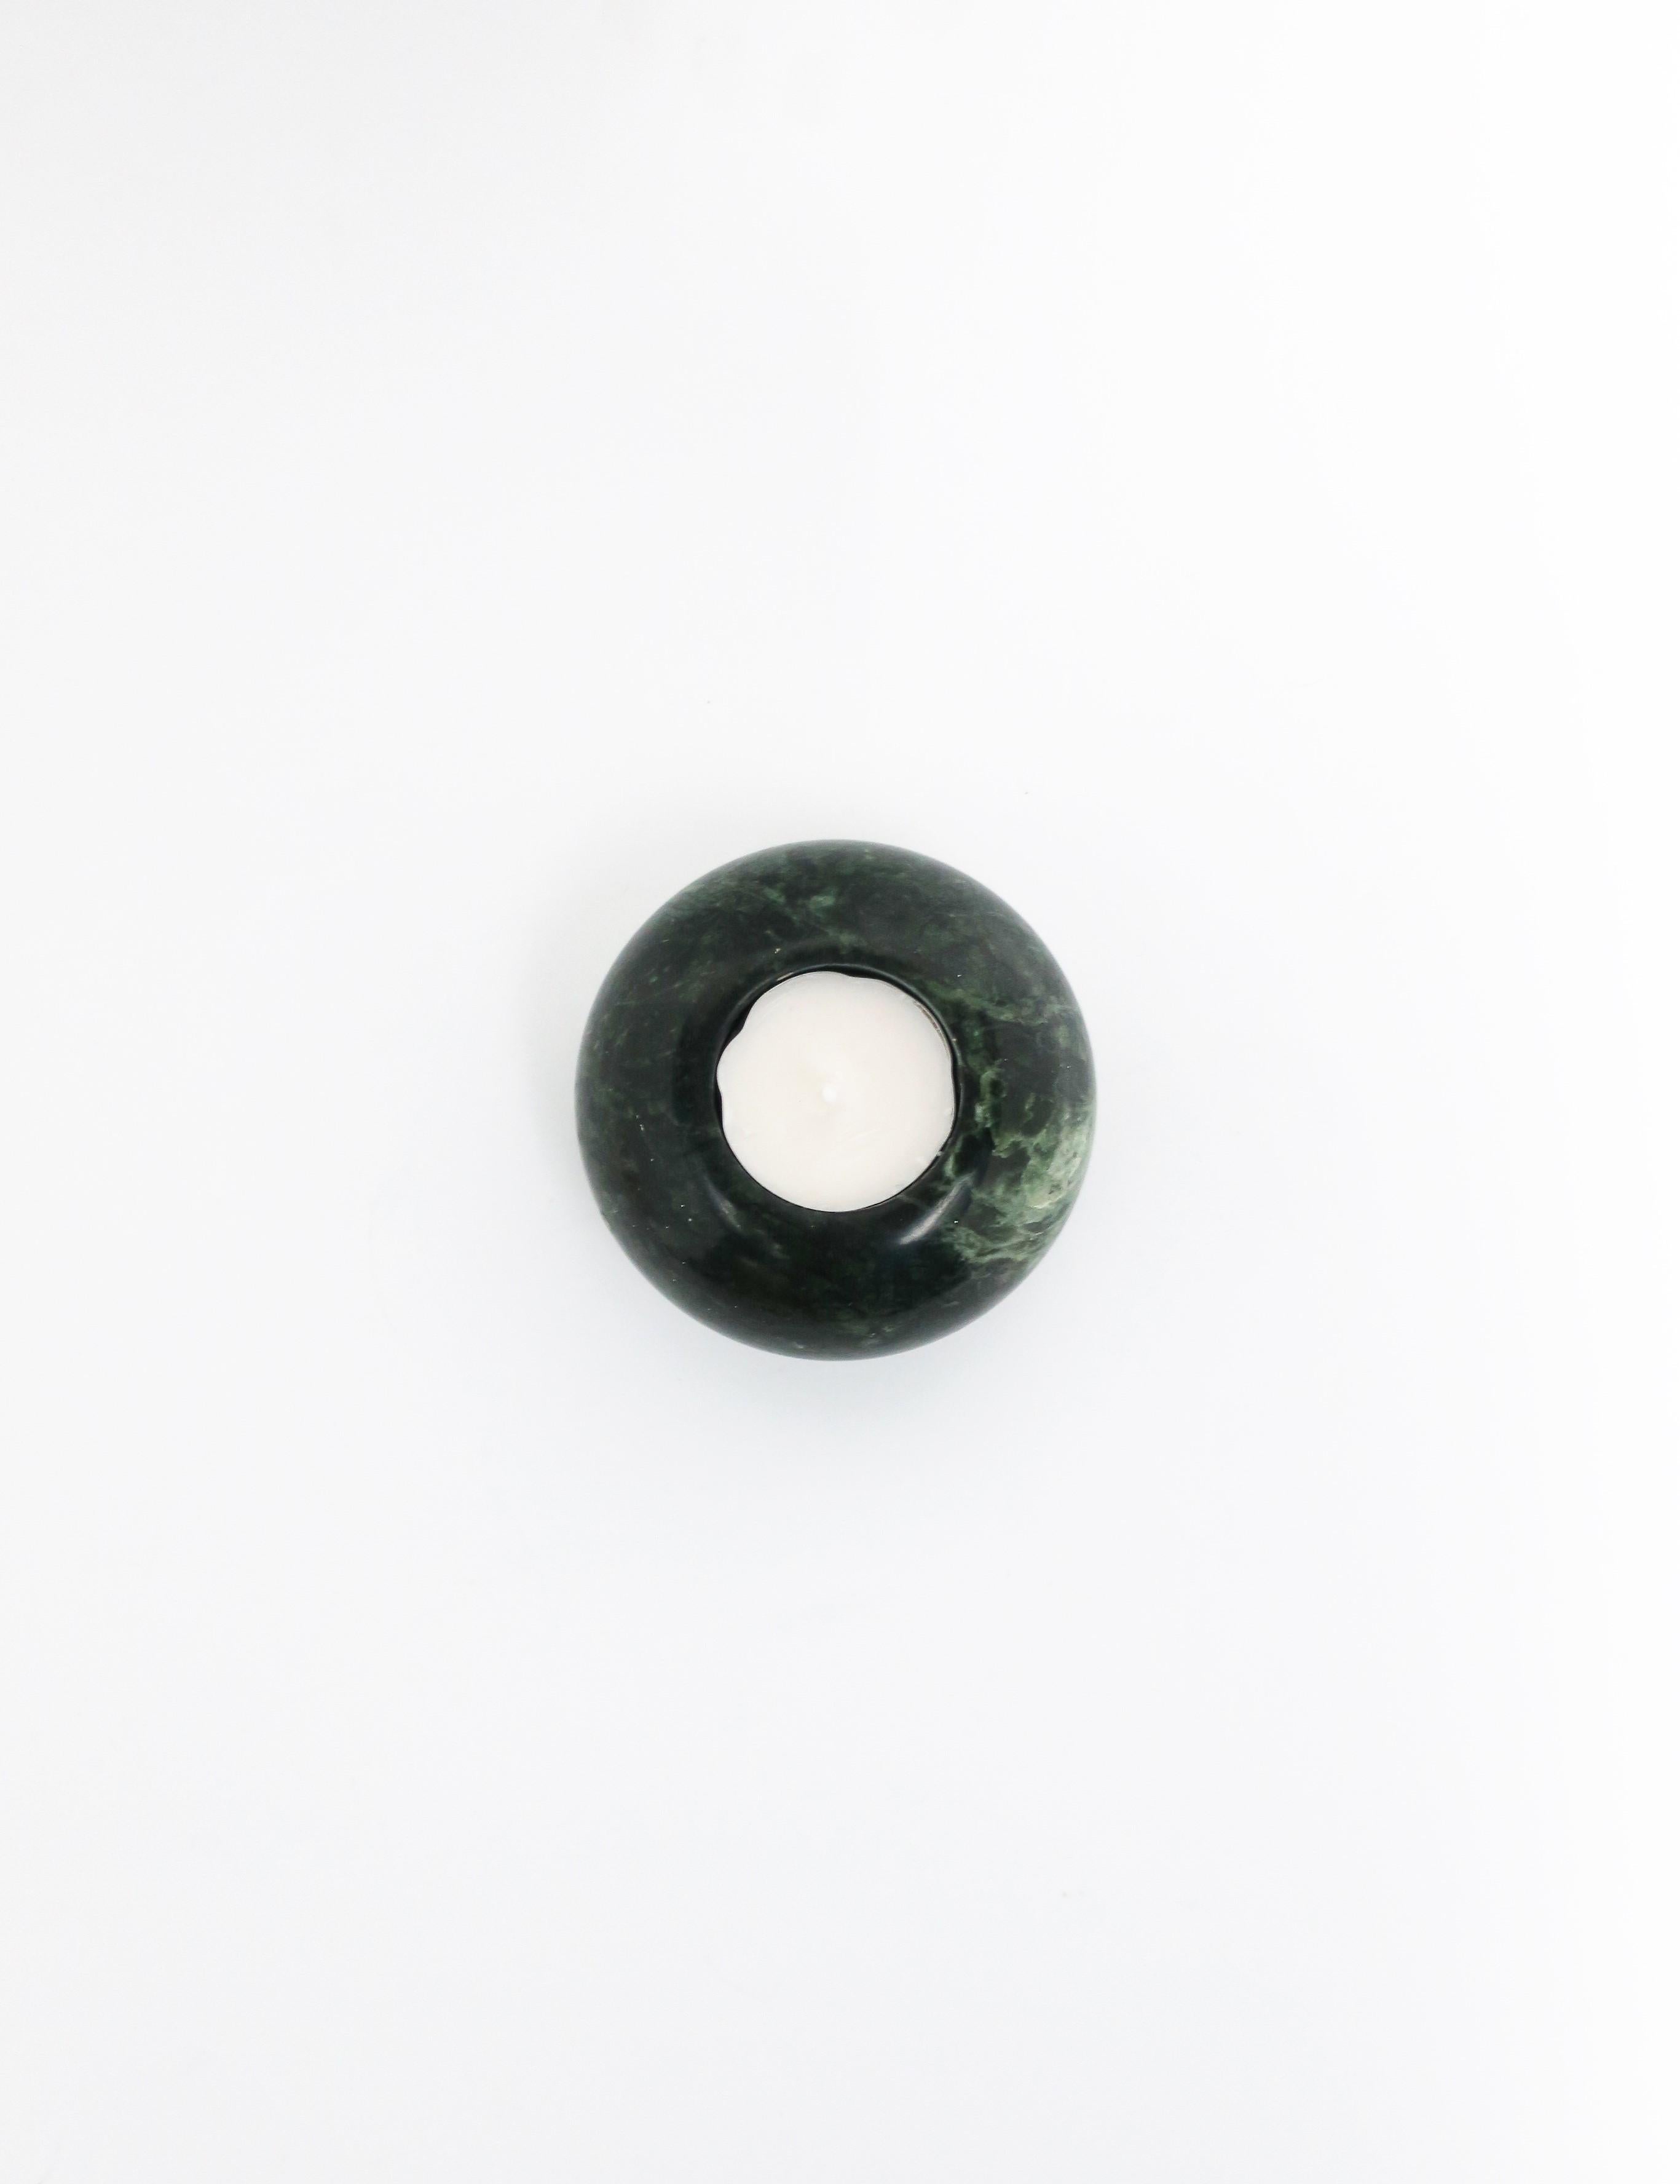 Ein moderner oder postmoderner dunkelgrüner Votivkerzenhalter aus Marmor mit weißer Äderung. Abmessungen: 2.25